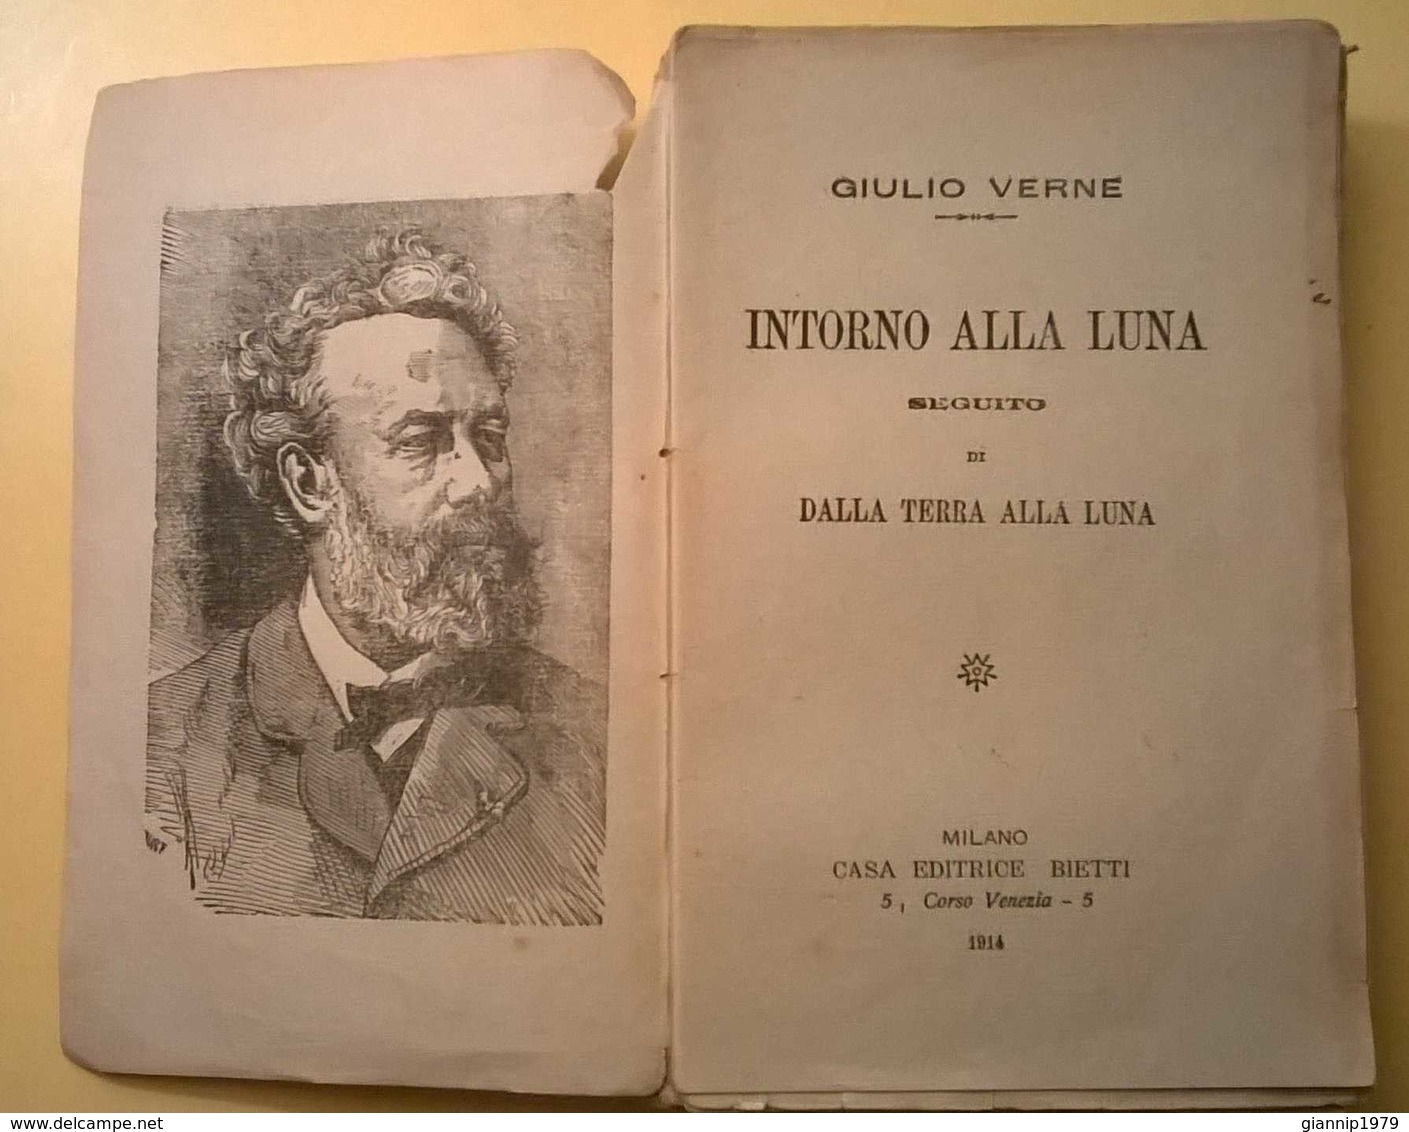 1914 RARITA' ANTICO LIBROINTORNO ALLA LUNA GIULIO VERNE ORIGINALE PRIMA EDIZIONE DA RILEGARE CASA EDITRICE BIETTII - Libri Antichi